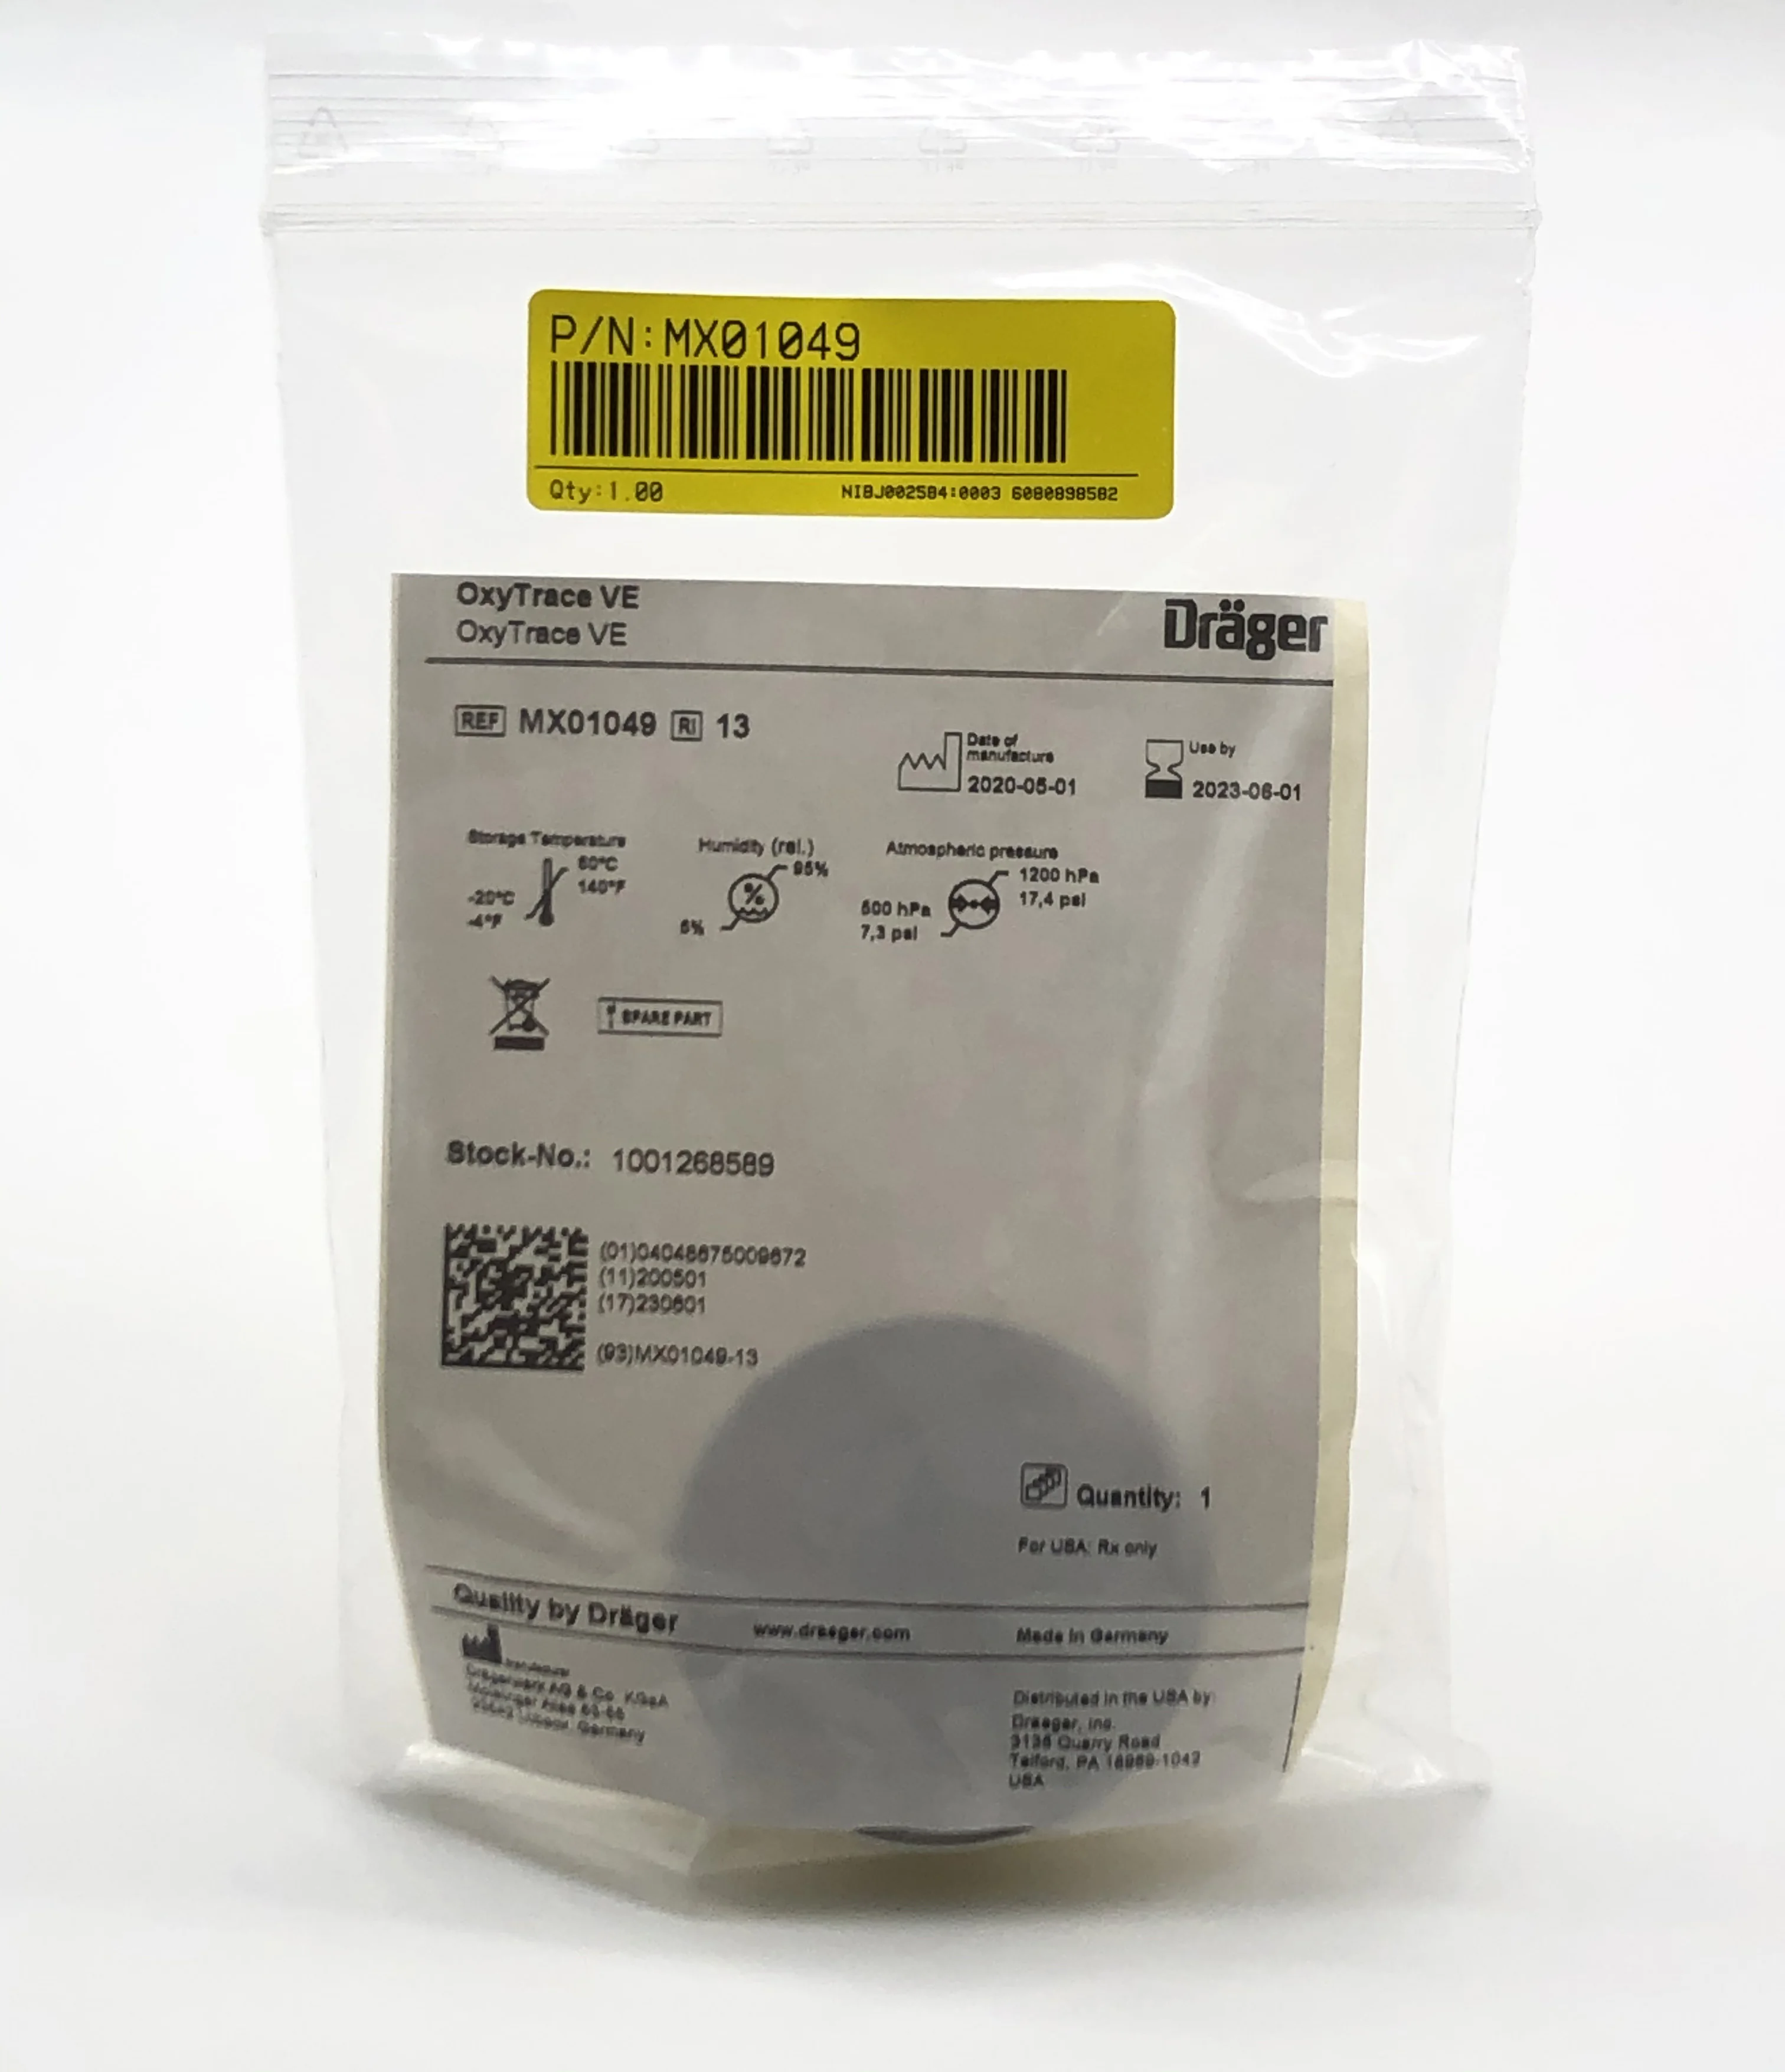 MX01049 αρχικός αισθητήρας οξυγόνου Drager Savina ιατρικός